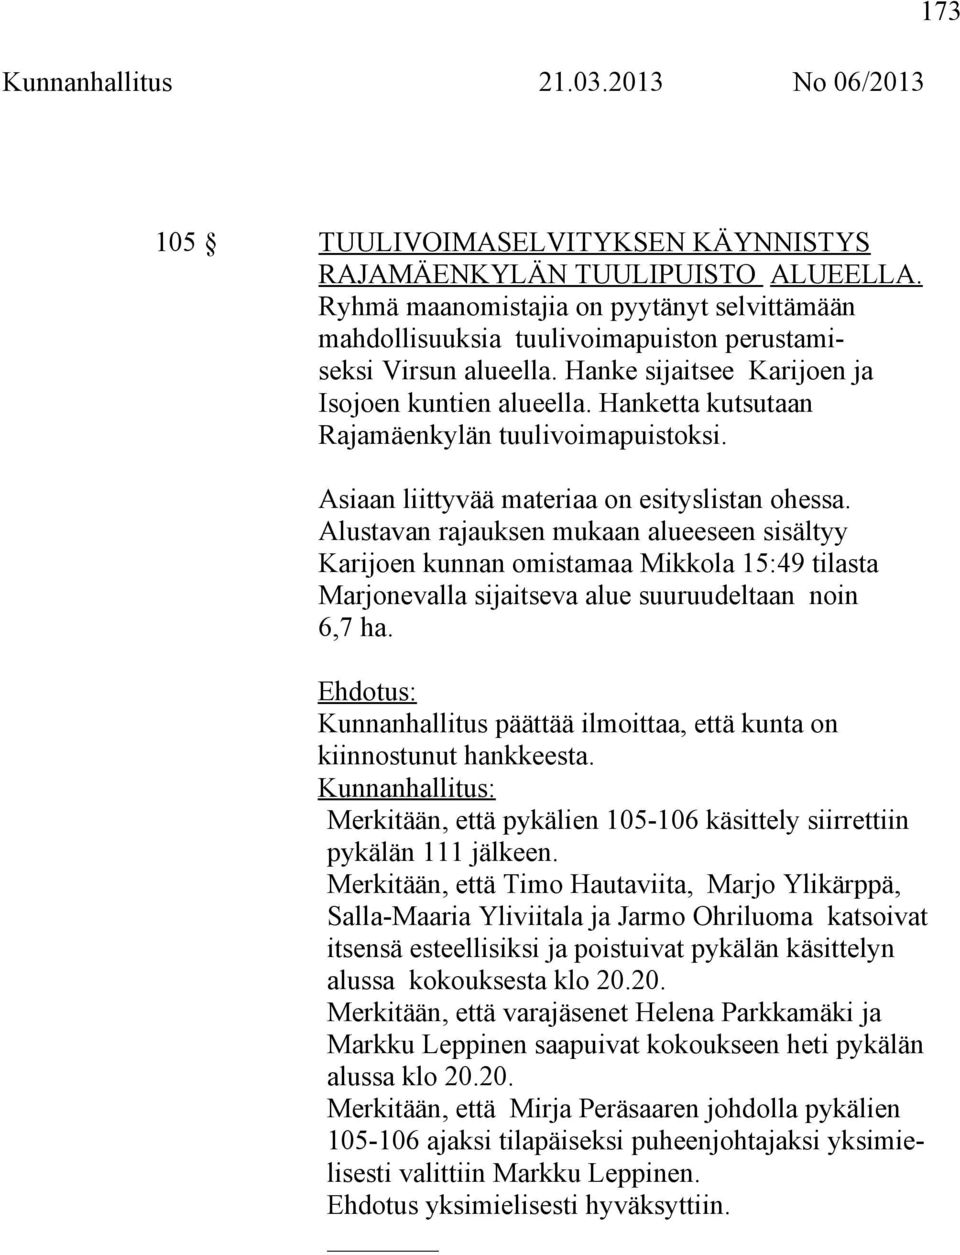 Alustavan rajauksen mukaan alueeseen sisältyy Karijoen kunnan omistamaa Mikkola 15:49 tilasta Marjonevalla sijaitseva alue suuruudeltaan noin 6,7 ha.